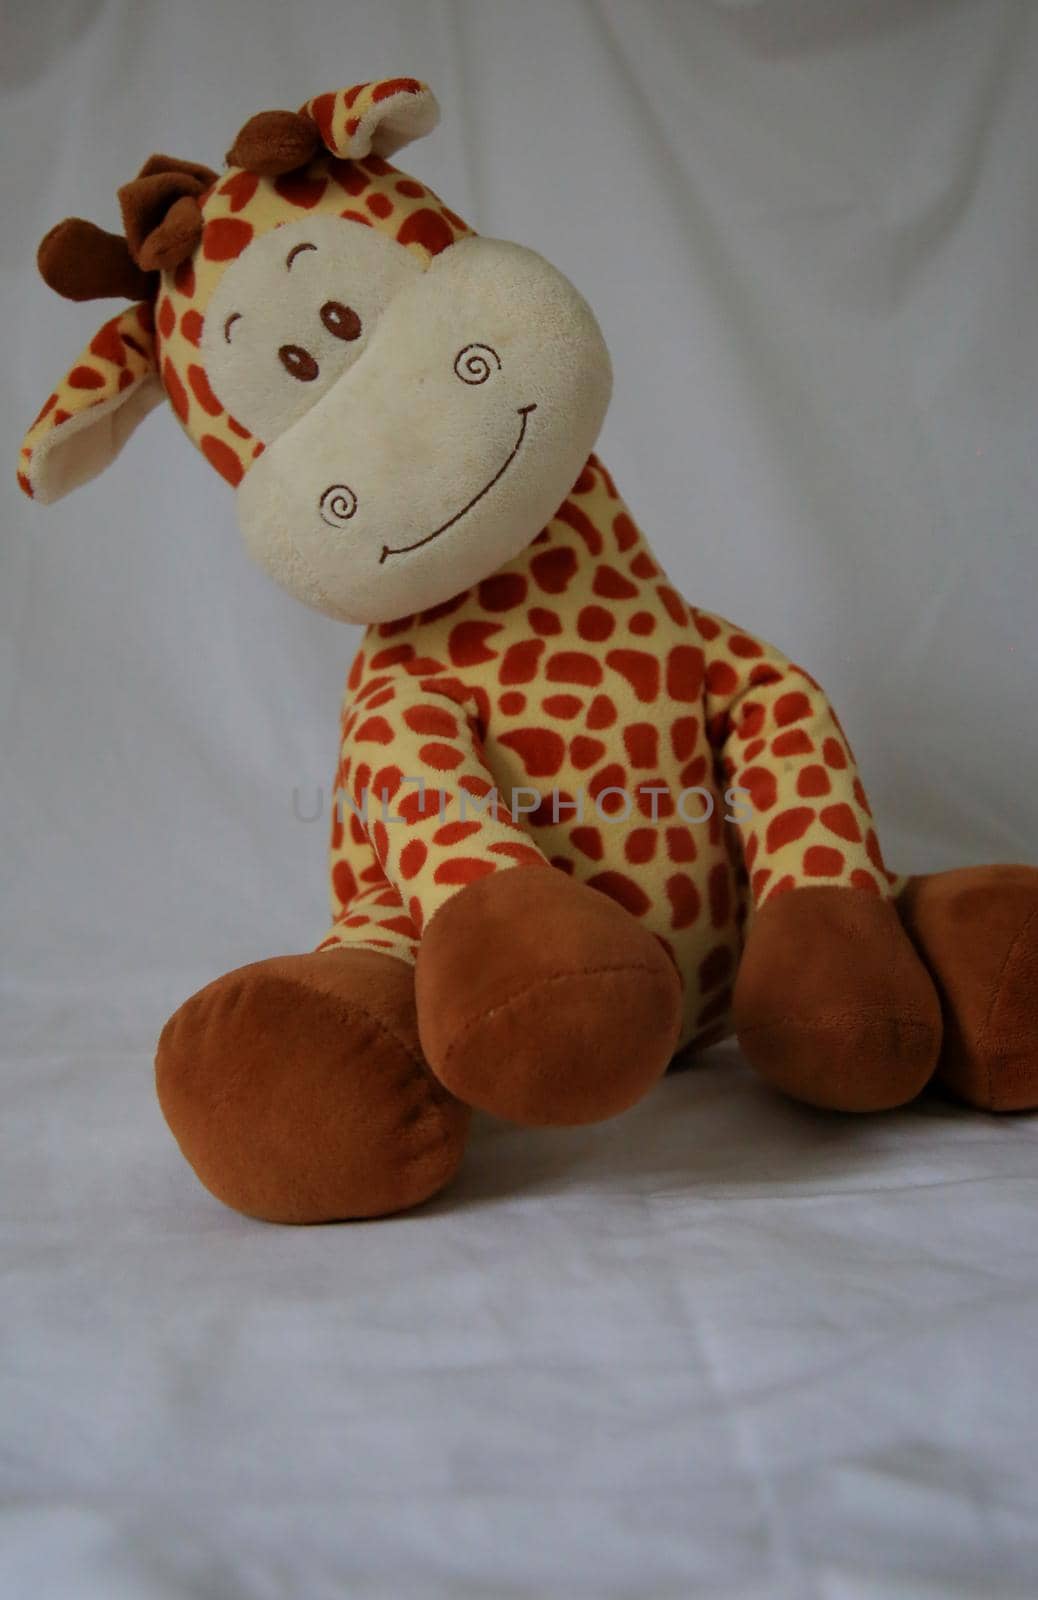 stuffed giraffe toy by joasouza